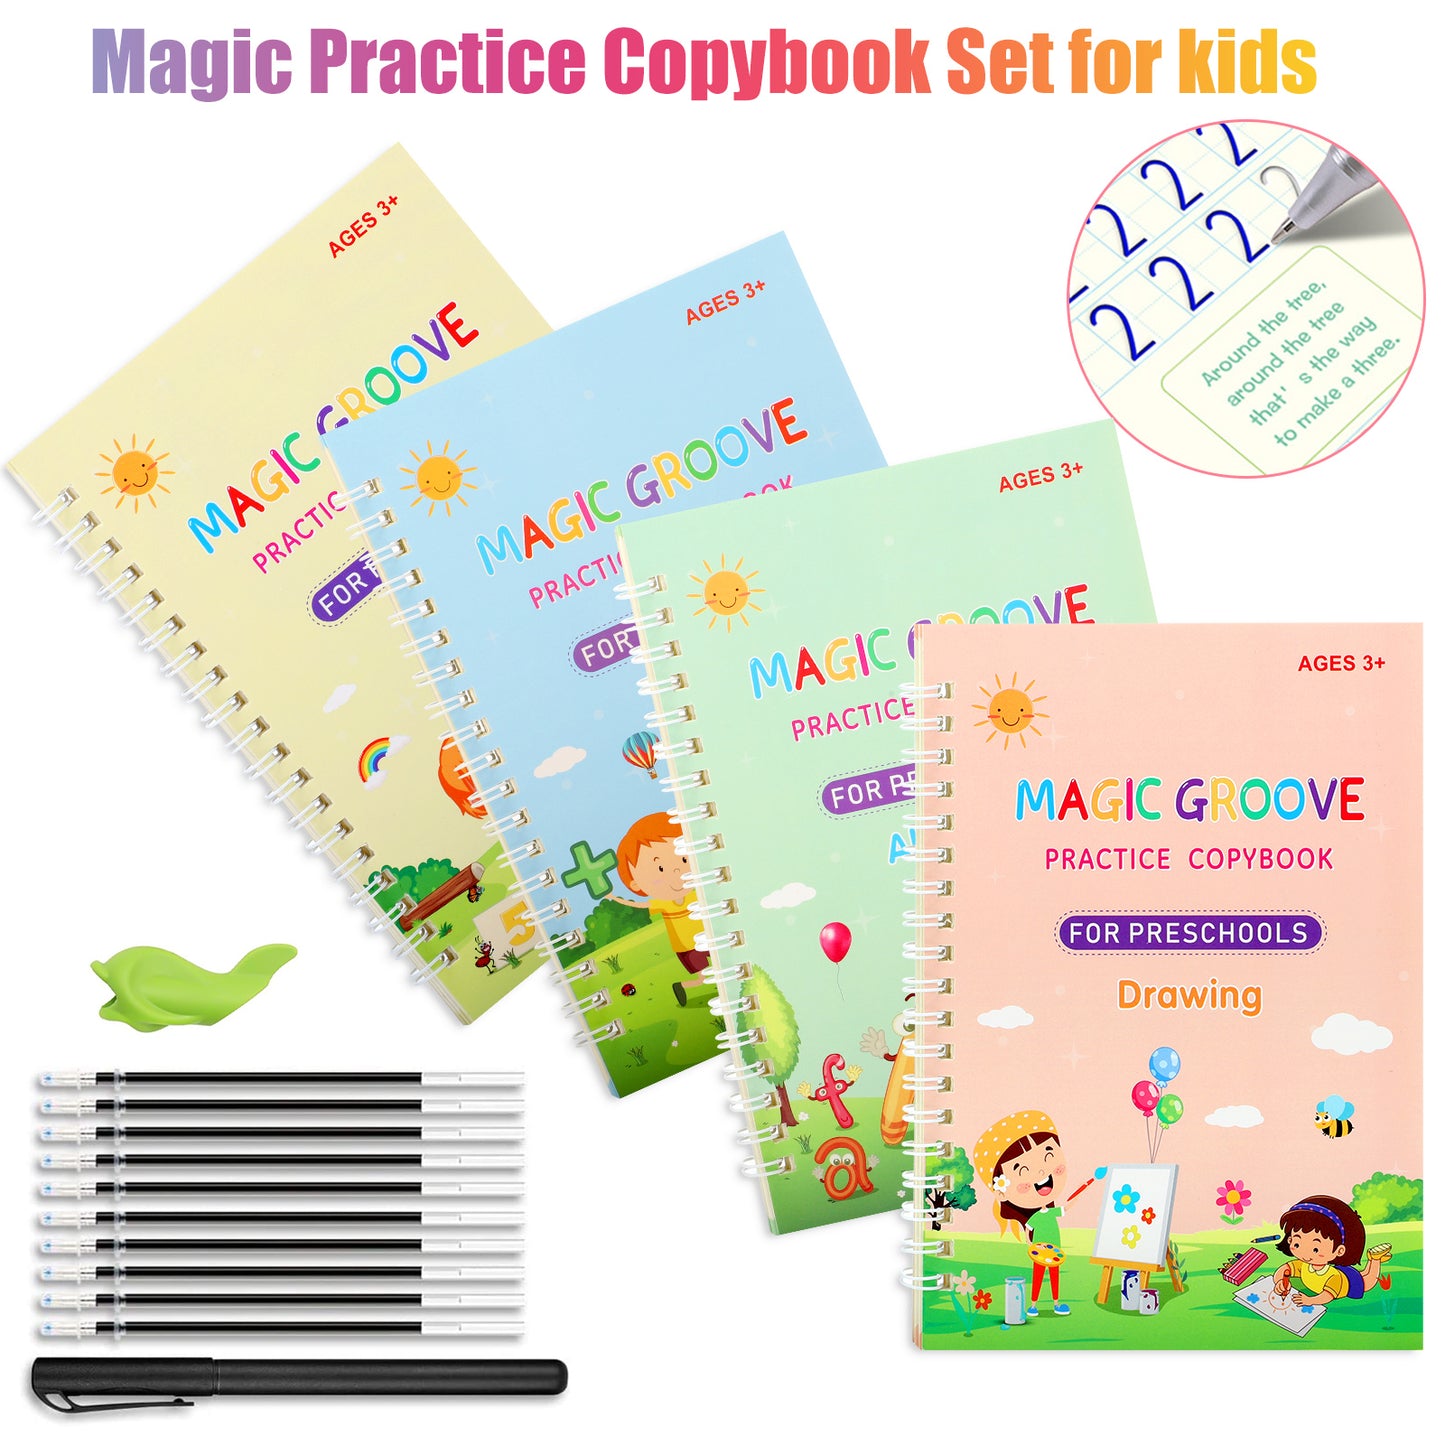 Magic Practice Copybook Set for kids